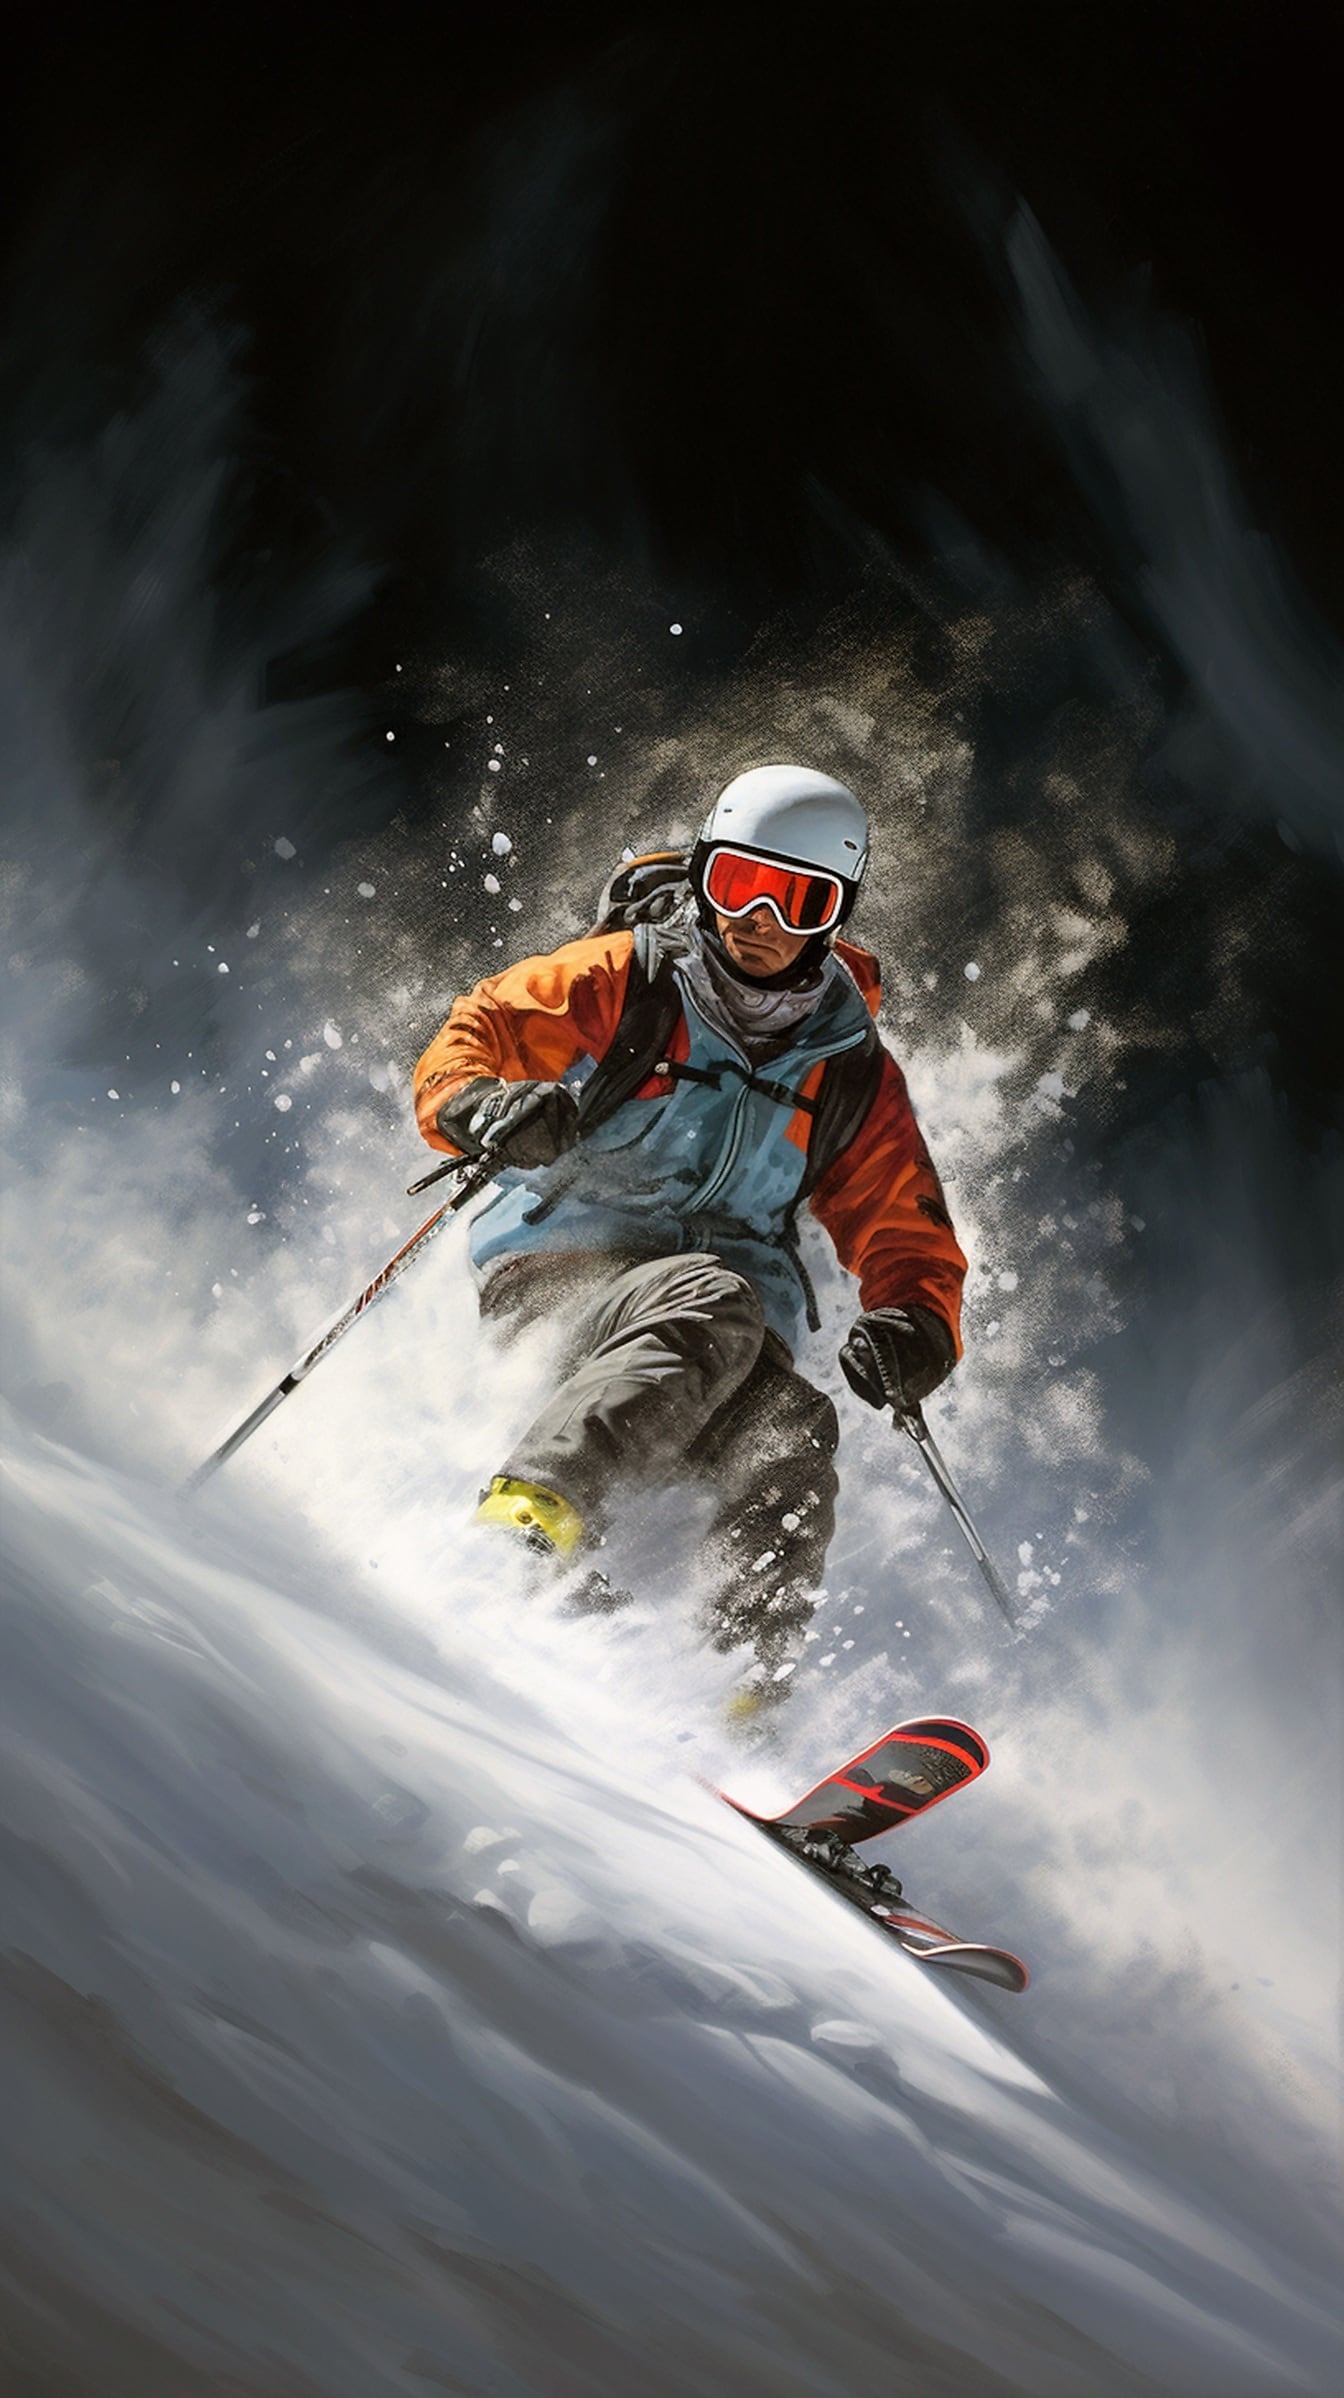 男子极限滑雪者在雪山坡上滑雪